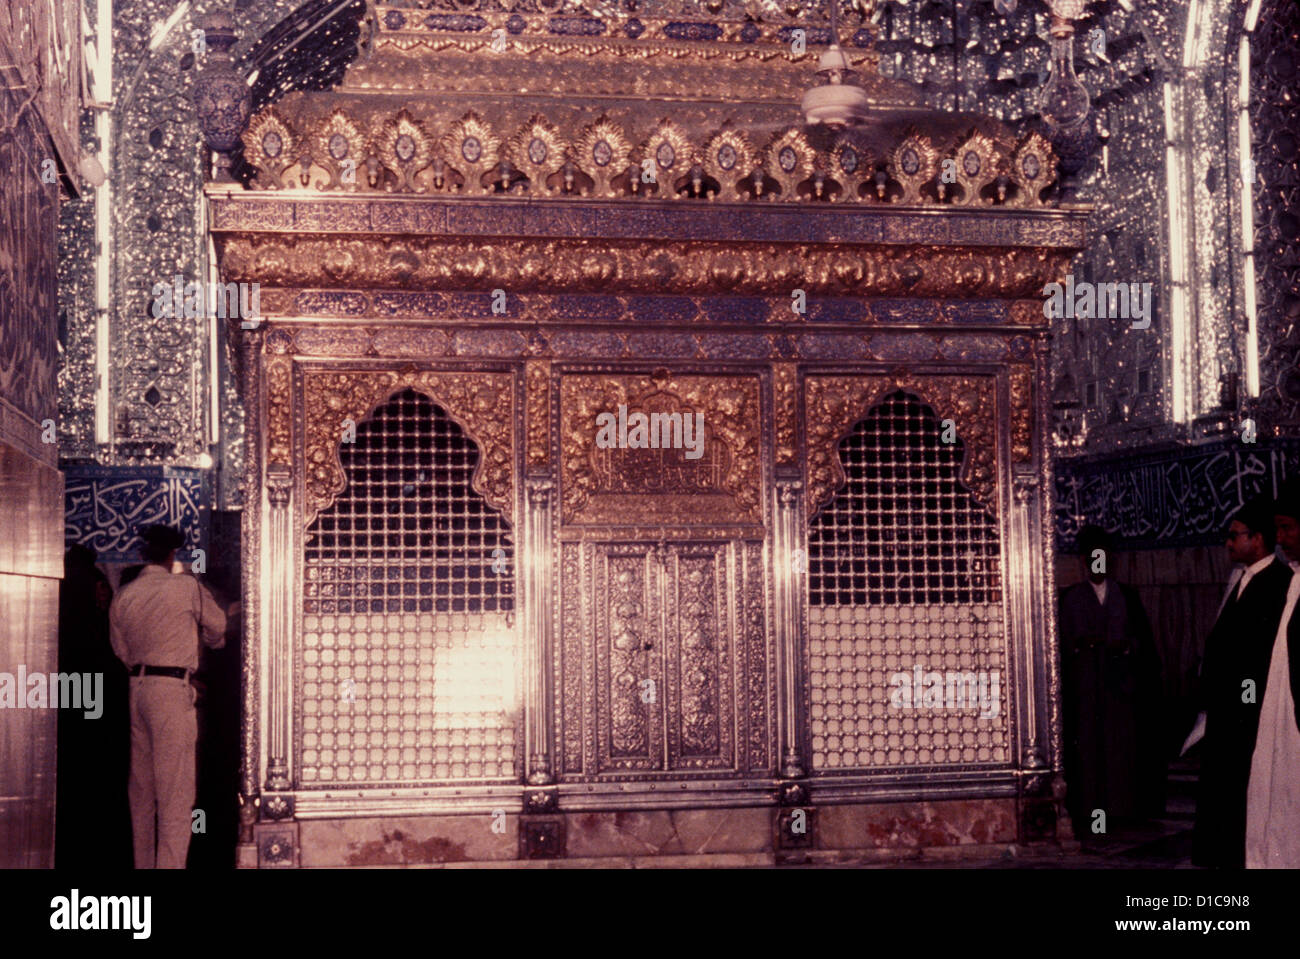 Lo zahria del santuario dell'Imam Hussein, Shi'te martirizzato a Karbala in Mesopotamia (ora Iraq) 680CE Foto Stock